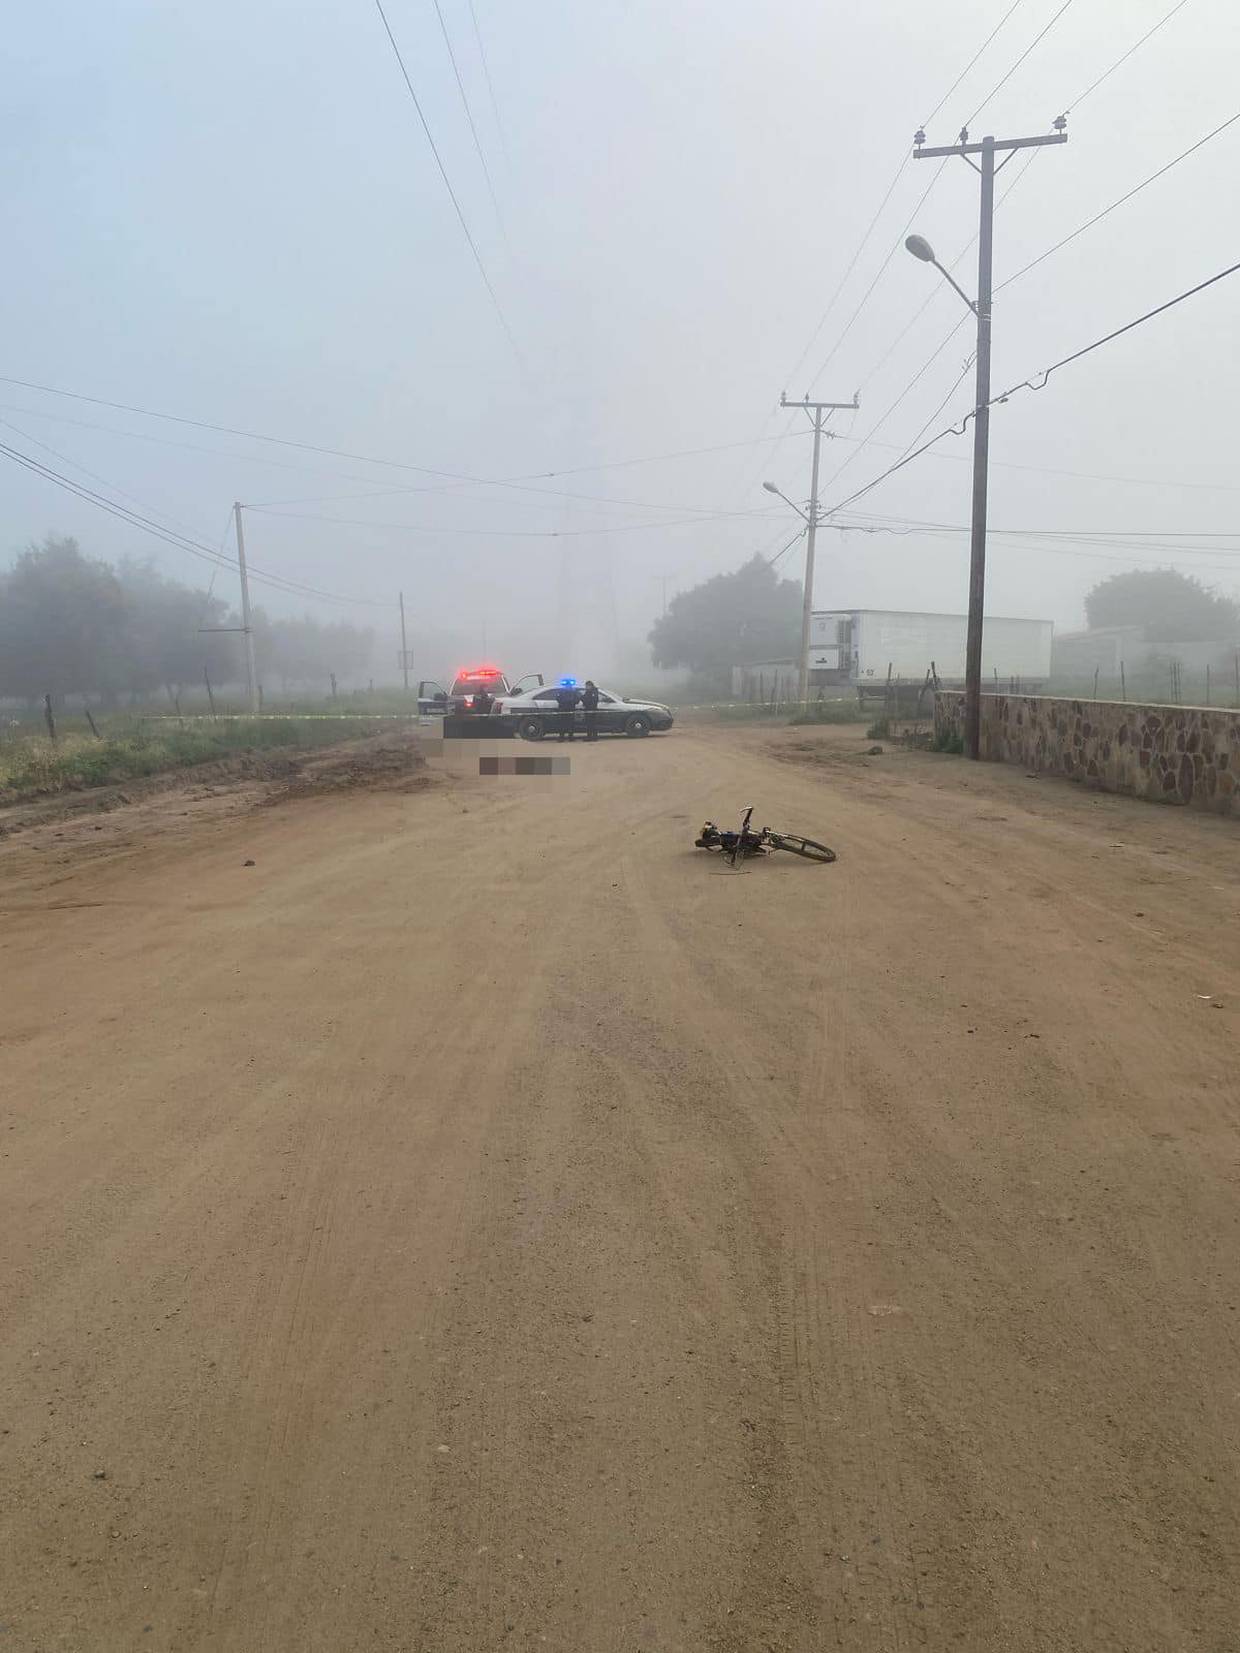 Ciclista muere atropellado en Maneadero
Según testigos el responsable